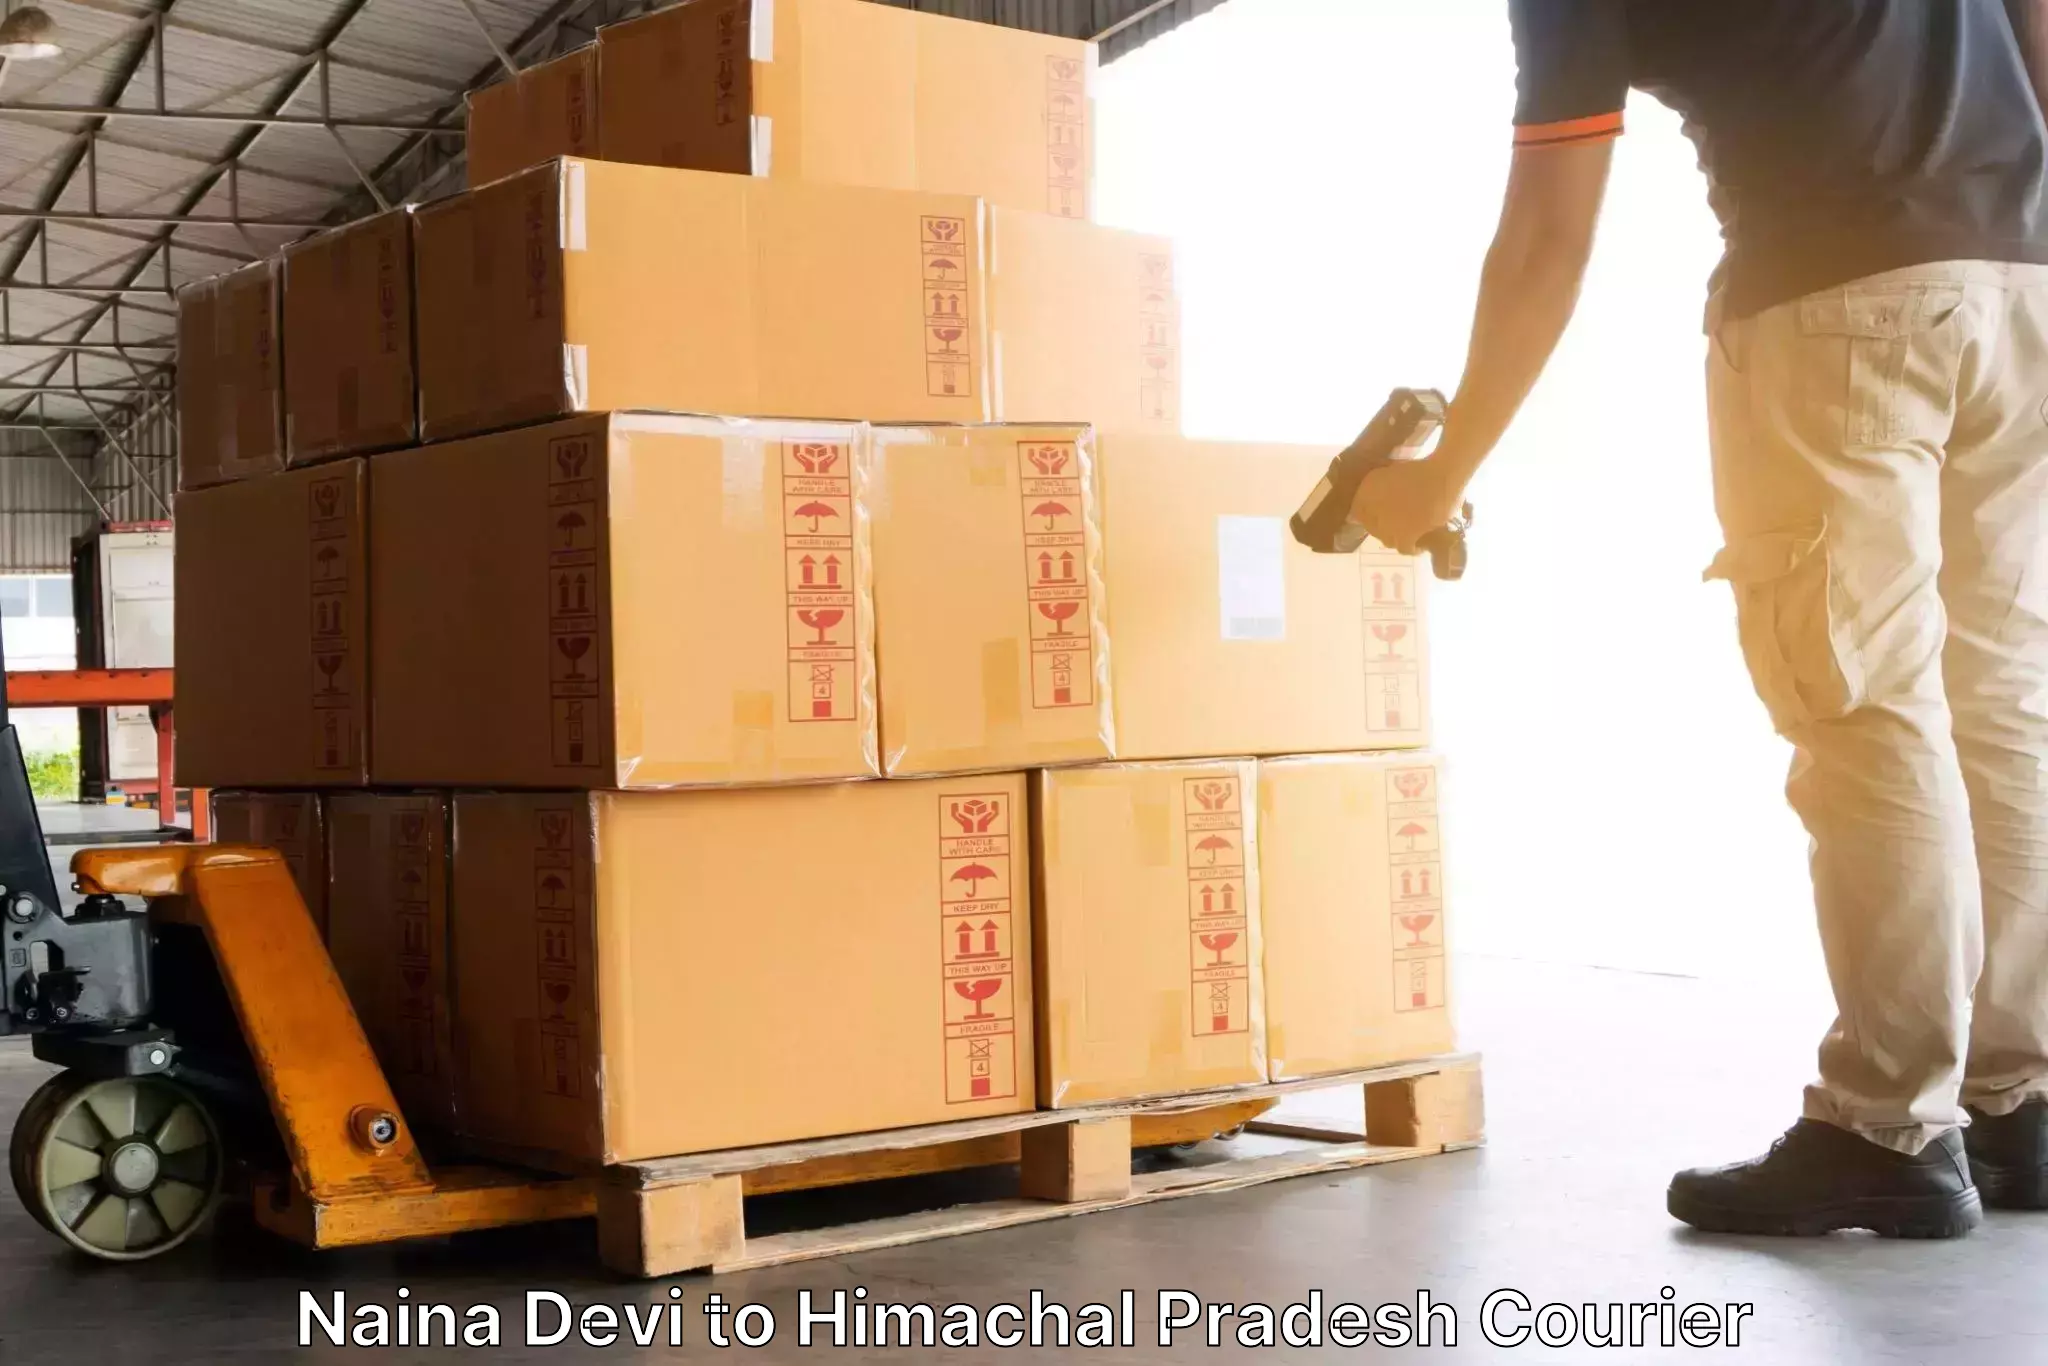 24/7 courier service Naina Devi to Naina Devi